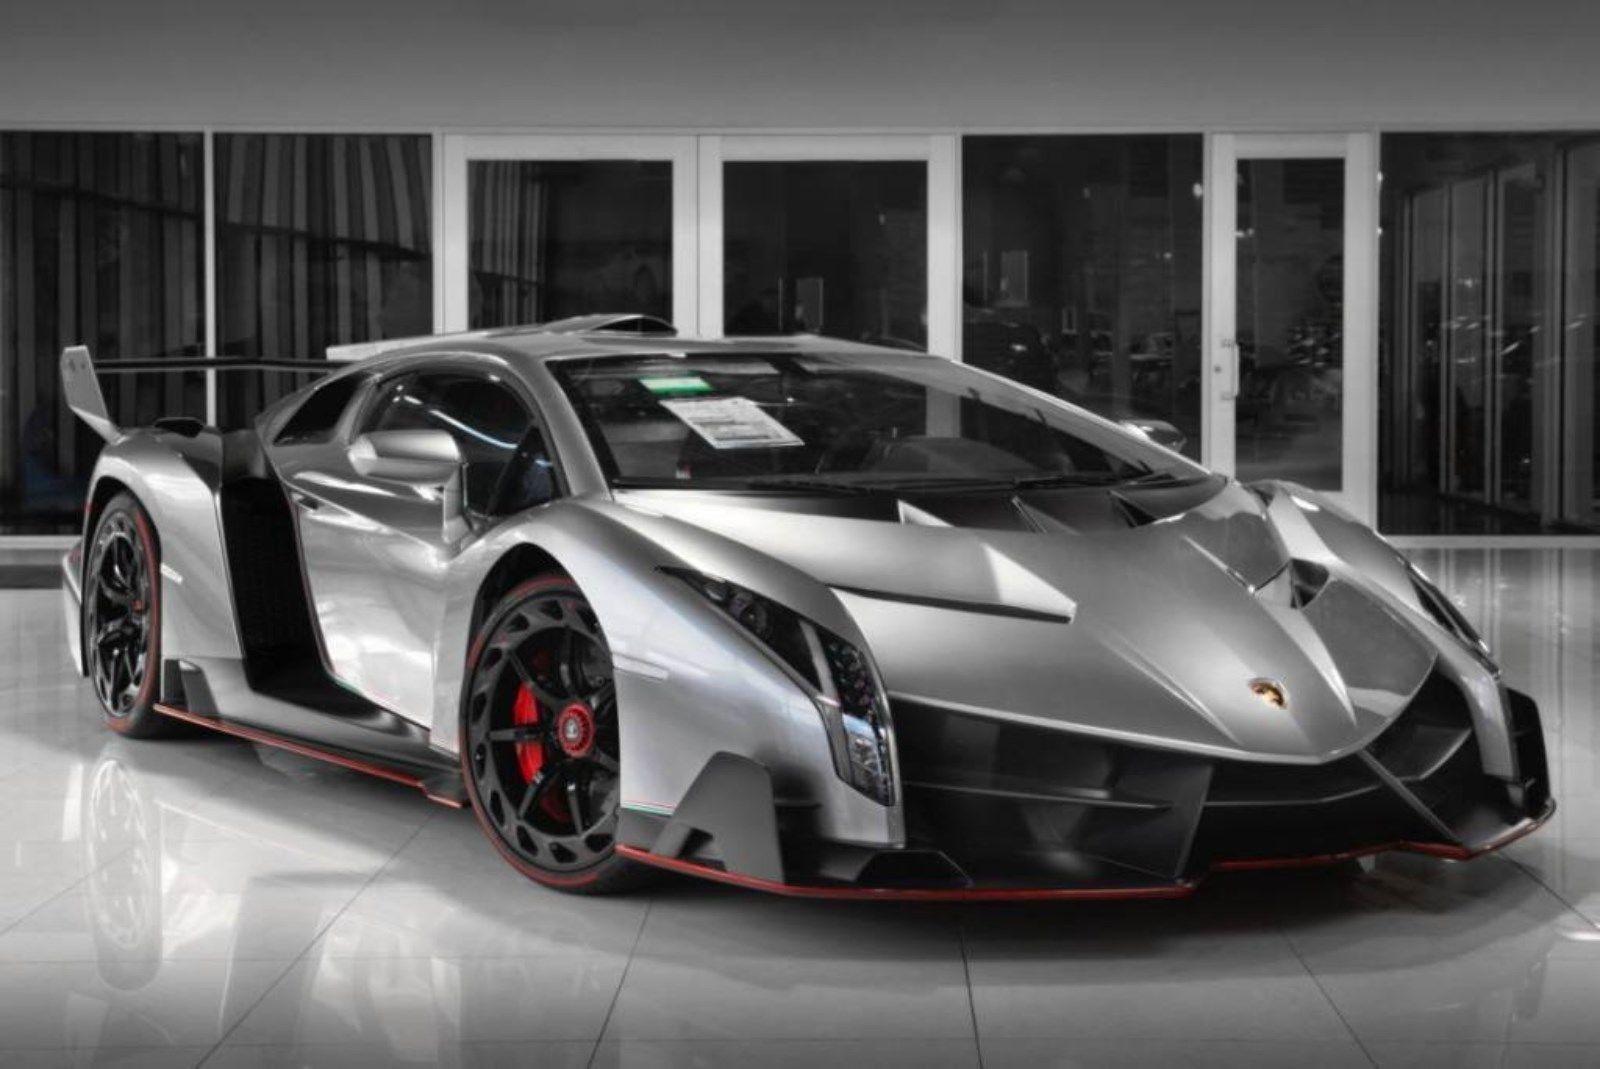 Chiêm ngưỡng vẻ đẹp của chiếc Lamborghini Veneno (Ảnh: Internet)